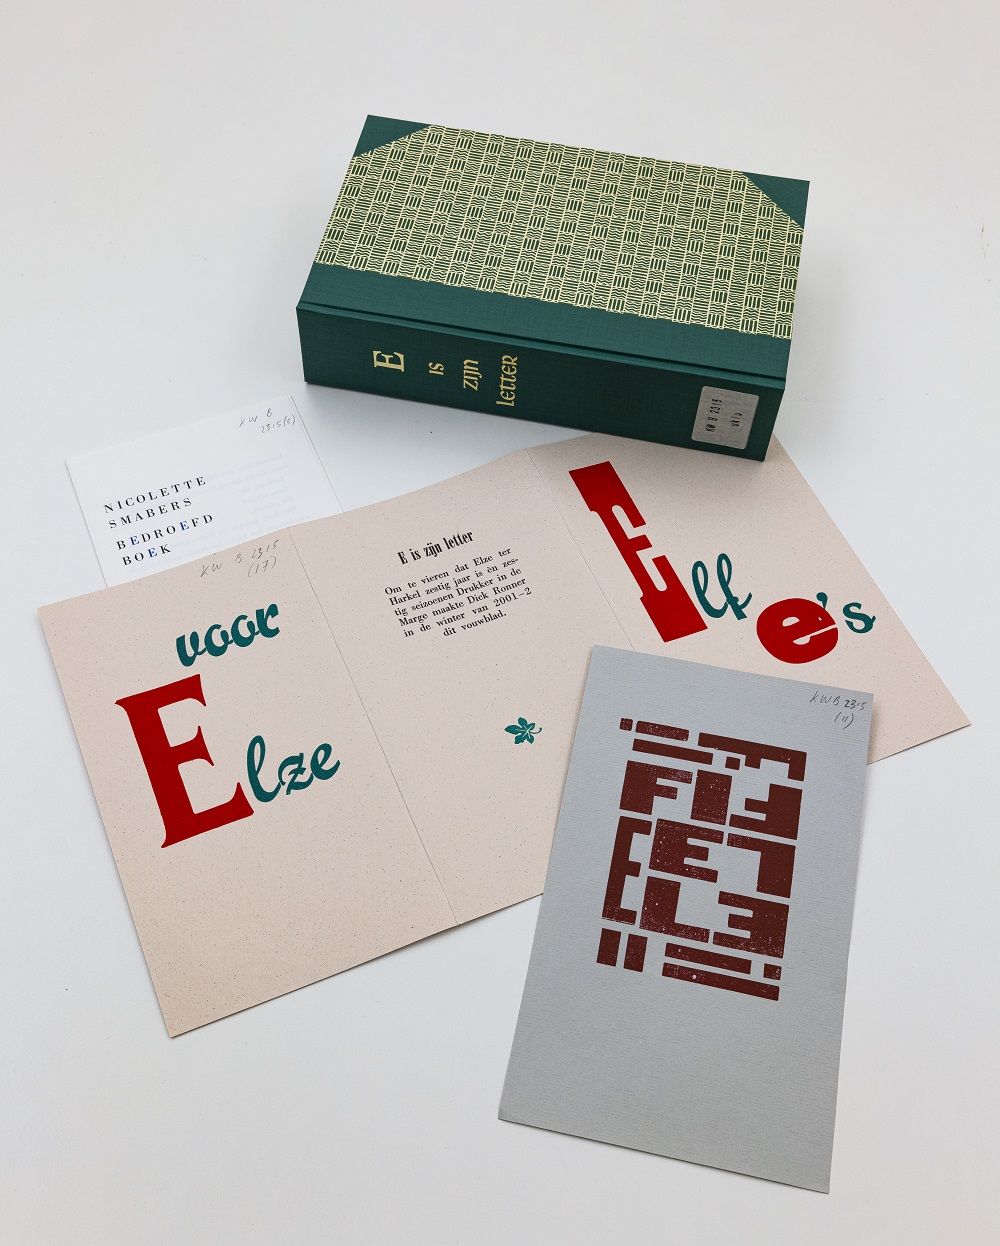 ‘E is zijn letter’. Drukkersproject, uitgegeven ter gelegenheid van de zestigste verjaardag van Elze ter Harkel, 2002